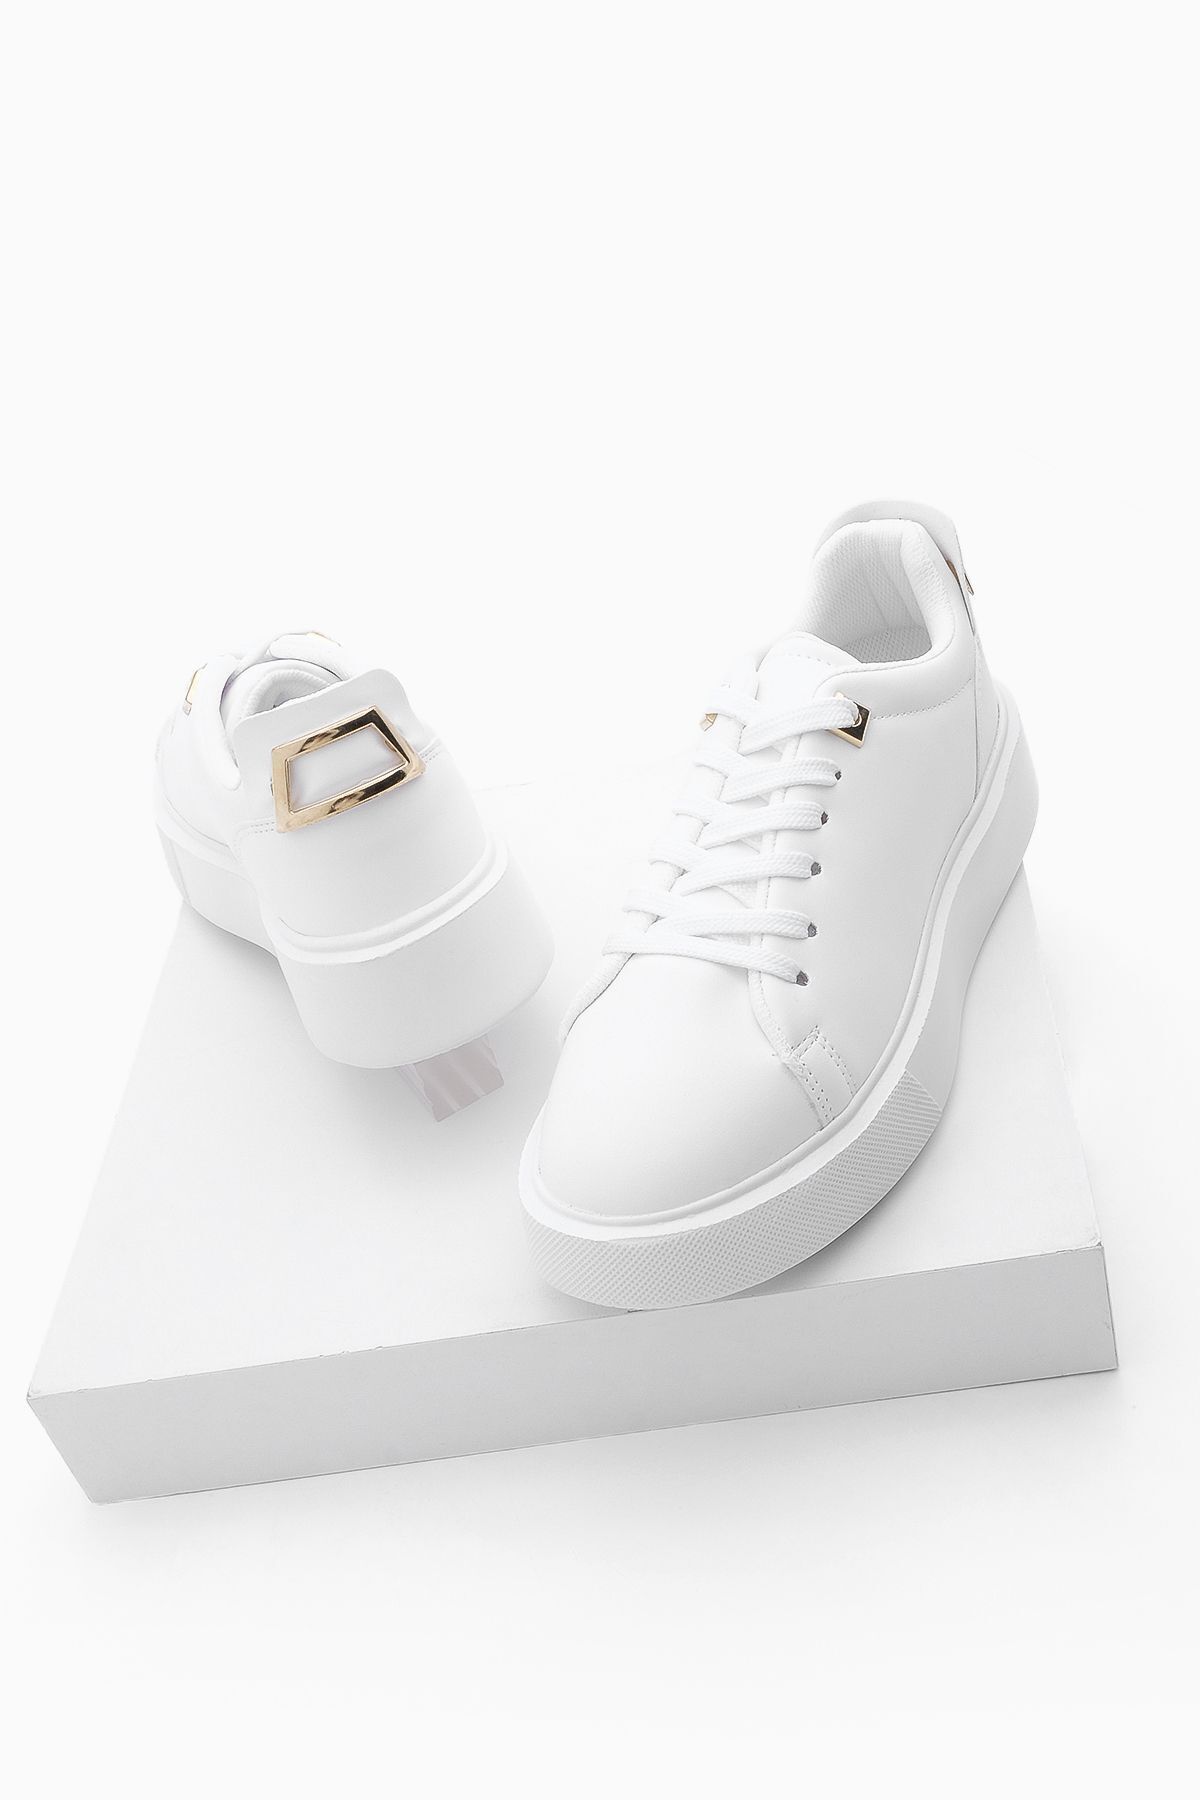 Marjin Kadın Sneaker Kalın Taban Altın Toka Detaylı Bağcıklı Spor Ayakkabı Rofke Beyaz